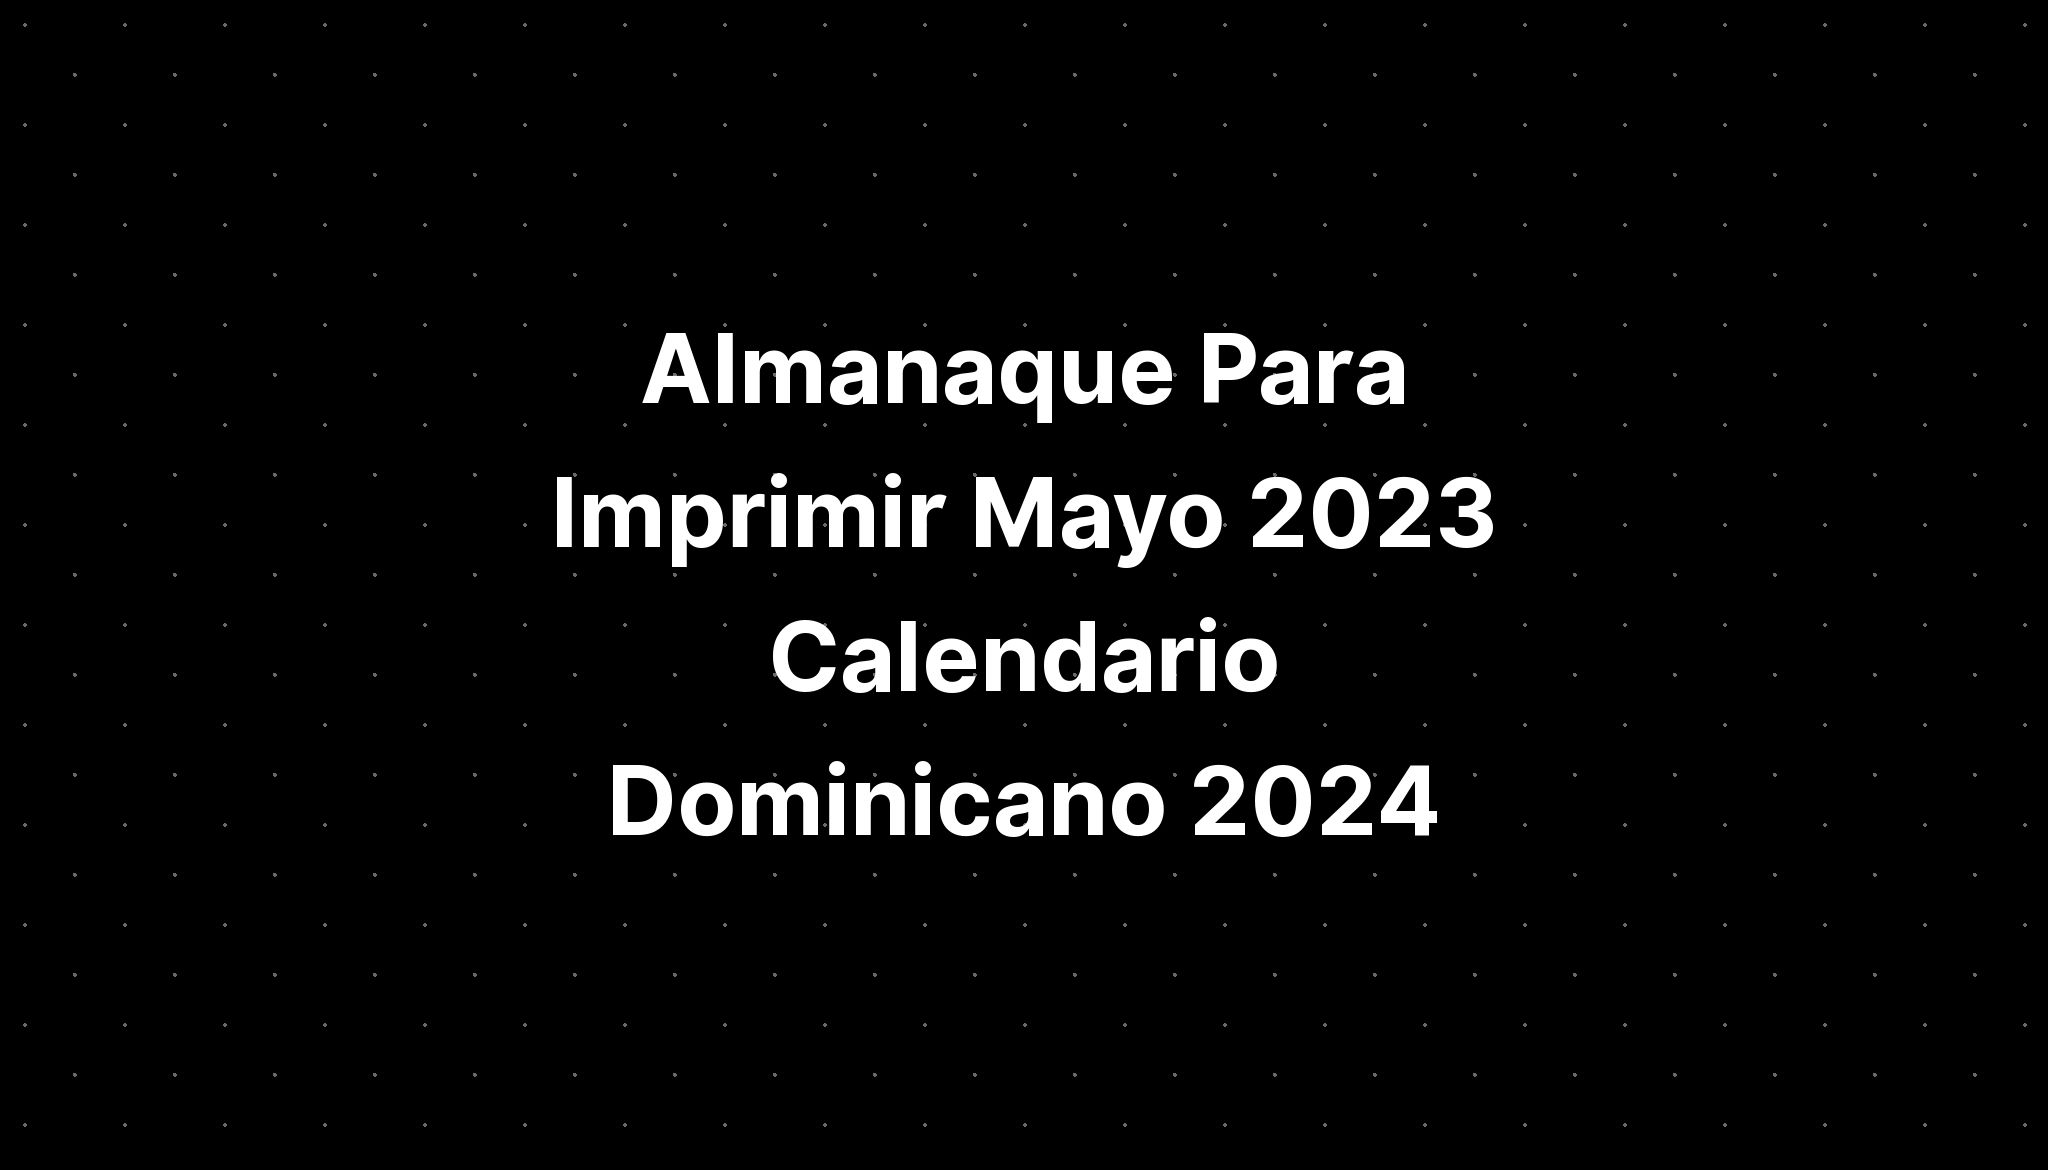 Almanaque Para Imprimir Mayo 2023 Calendario Dominicano 2024 IMAGESEE